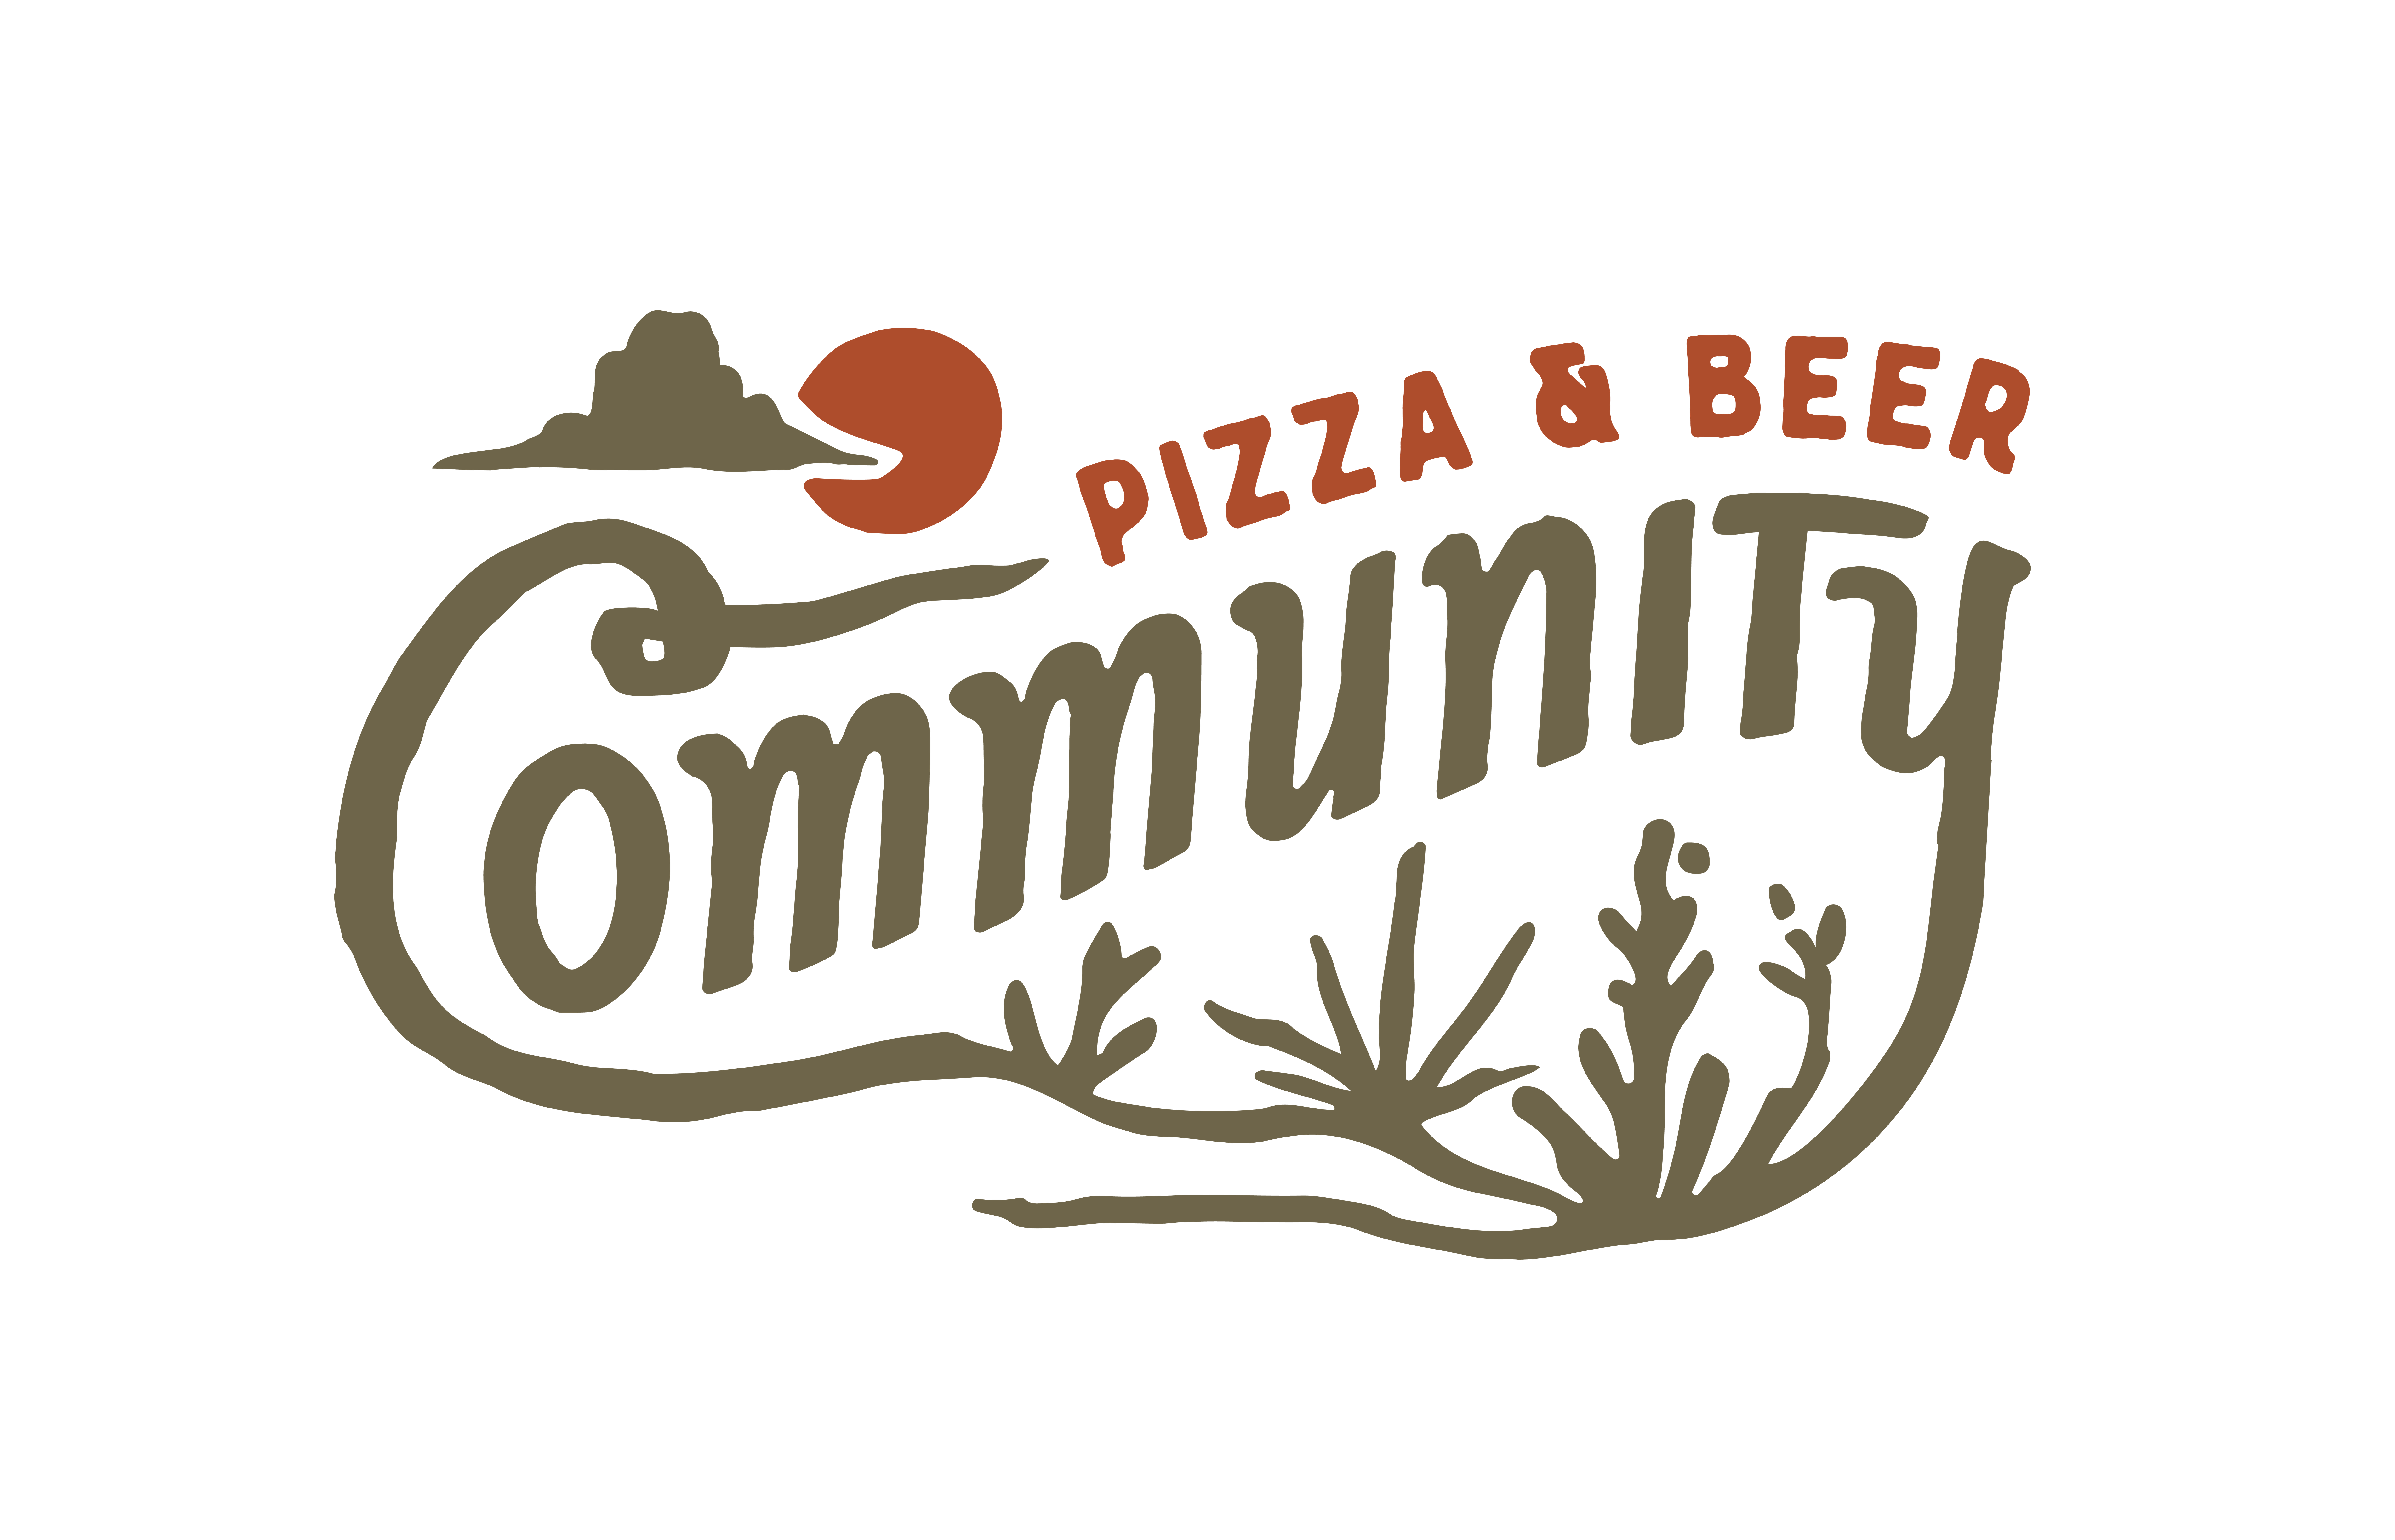 Community Pizza & Beer Garden